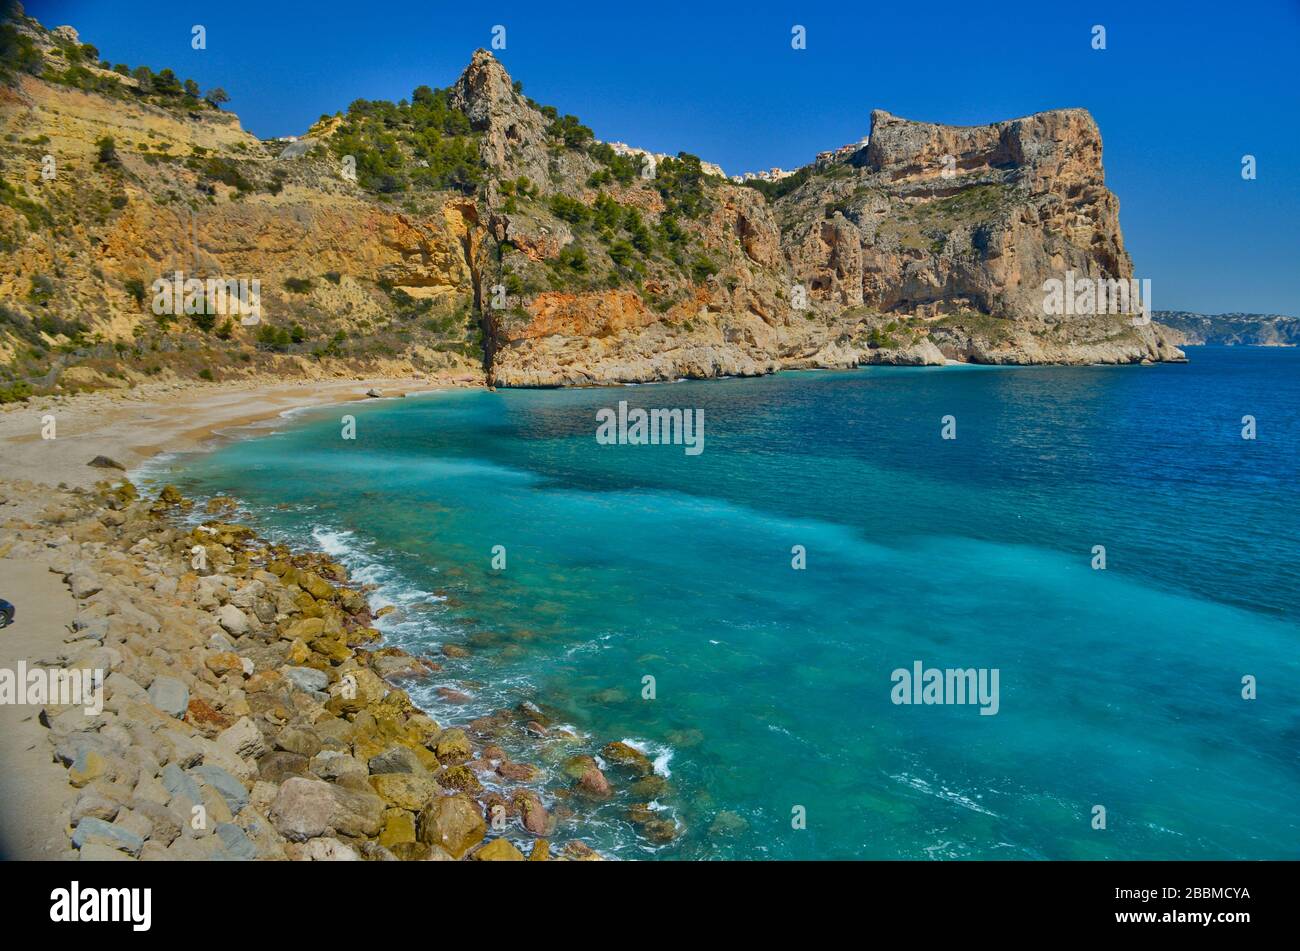 La cala de Cala Moraig, una playa cercana al complejo de Moraira en la Costa Blanca en España Foto de stock